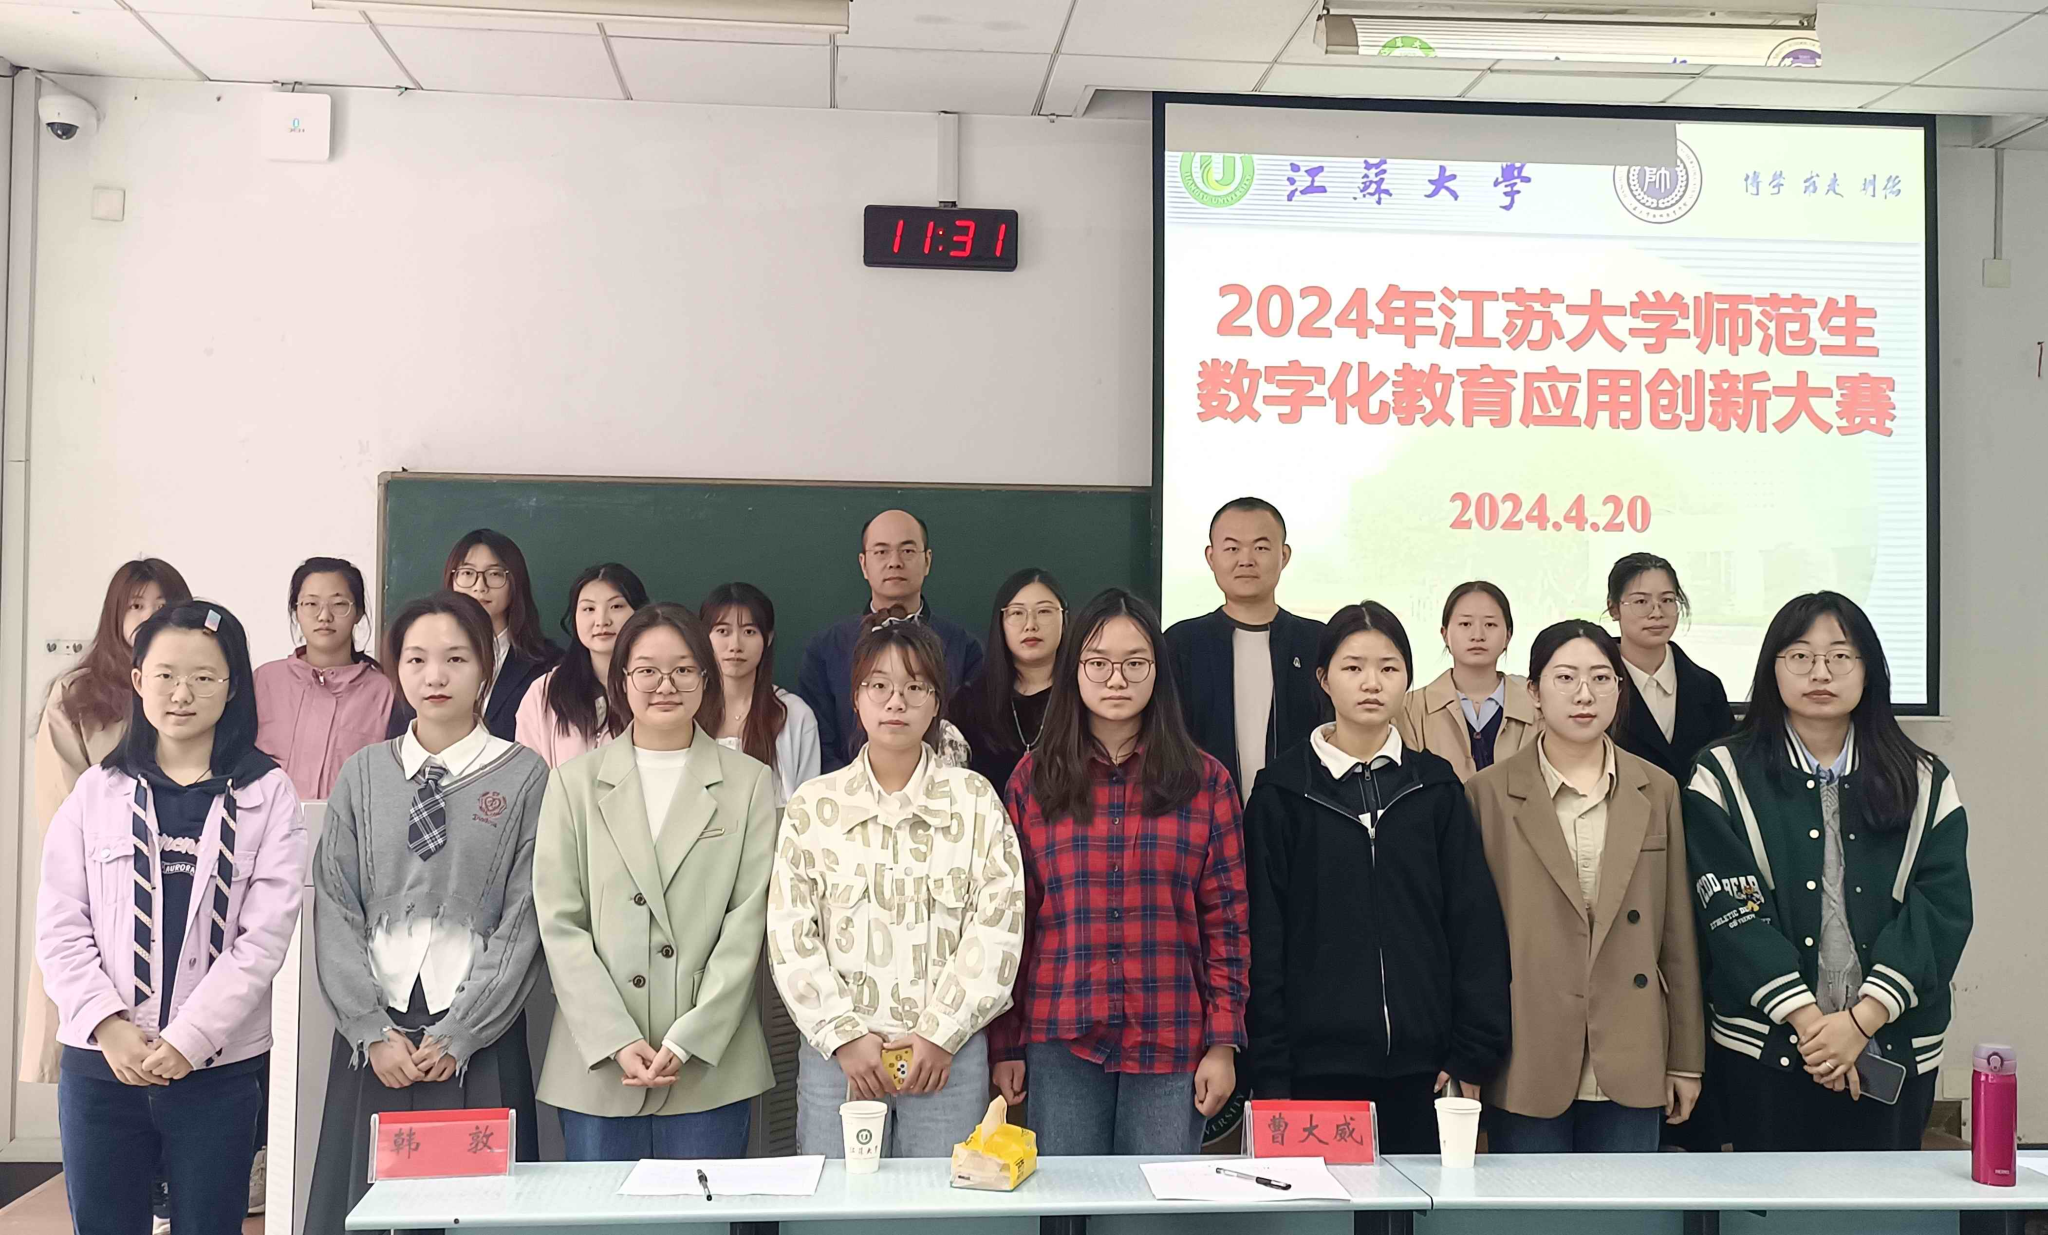 我院承办的“江苏大学2024年师范生数字化教育应用创新大赛”圆满结束